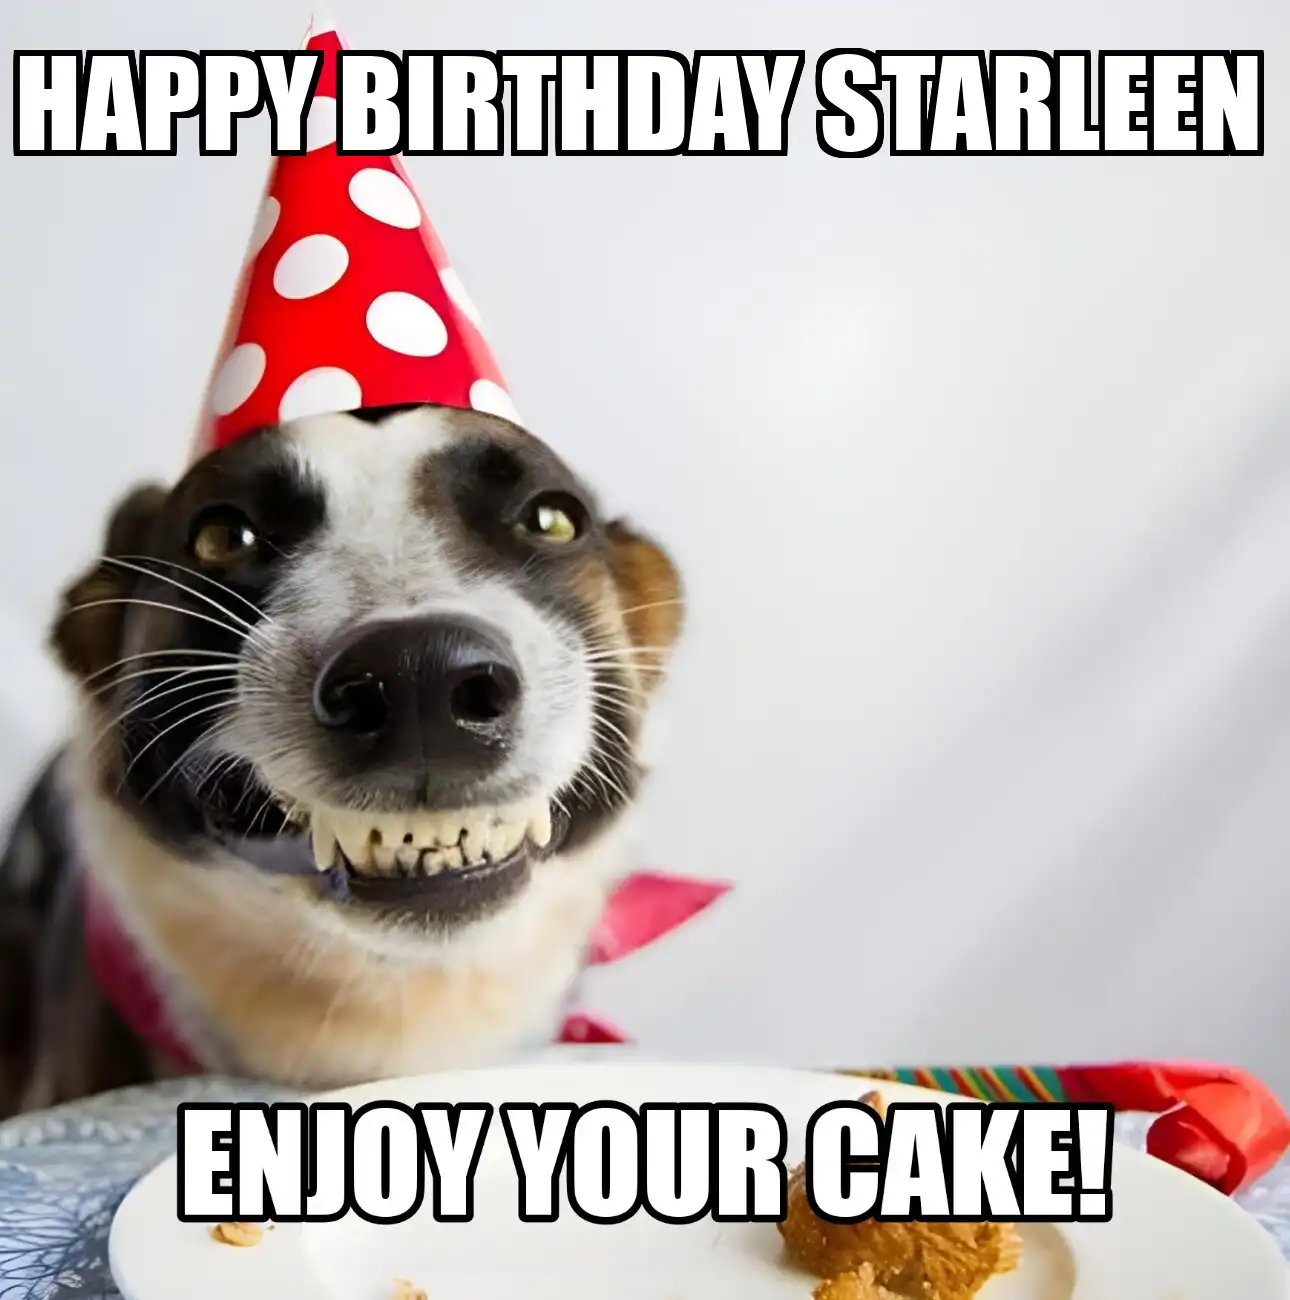 Happy Birthday Starleen Enjoy Your Cake Dog Meme